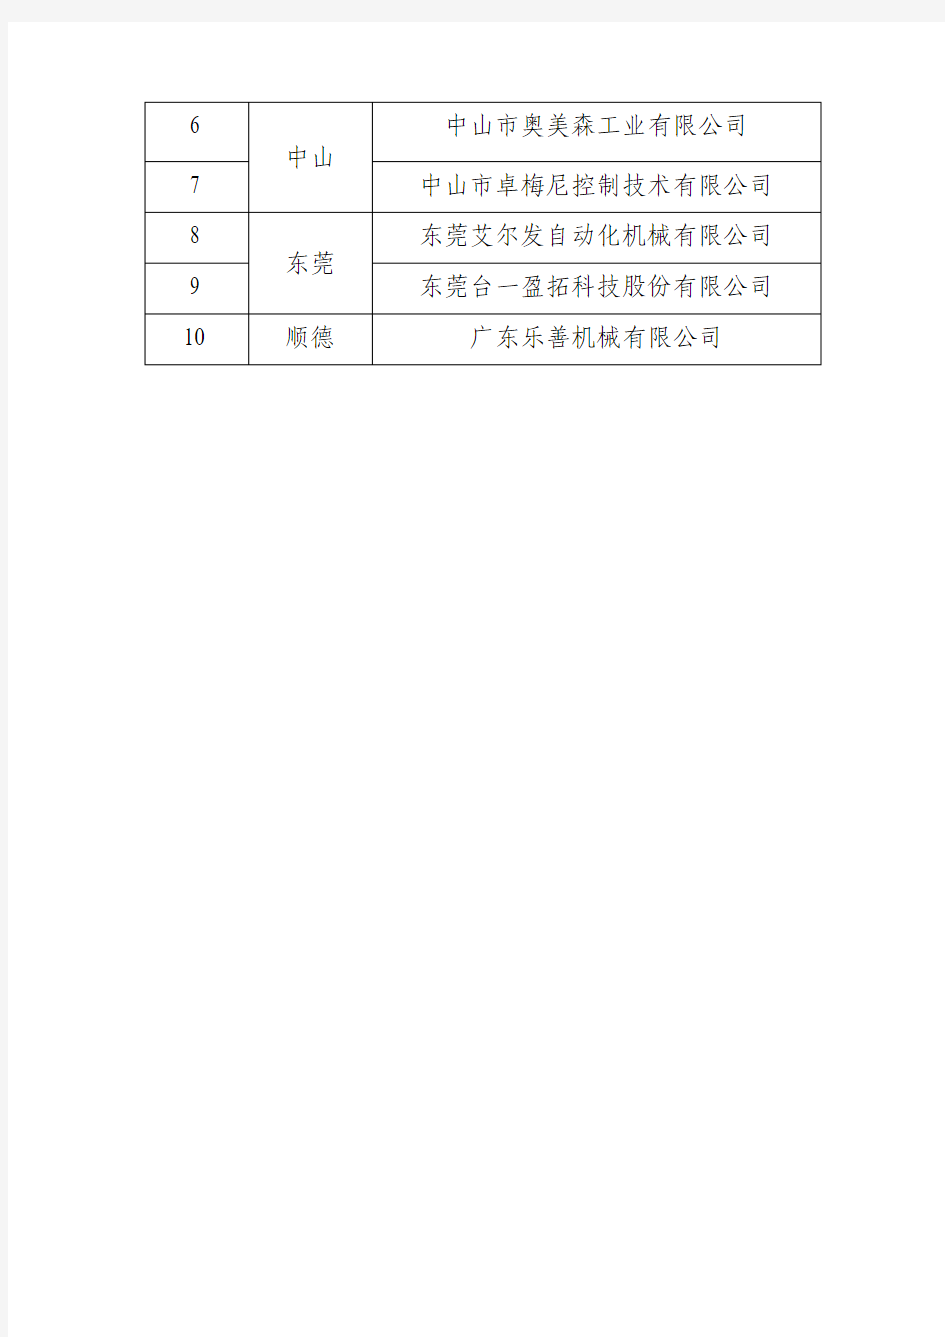 广东省智能制造骨干企业名单